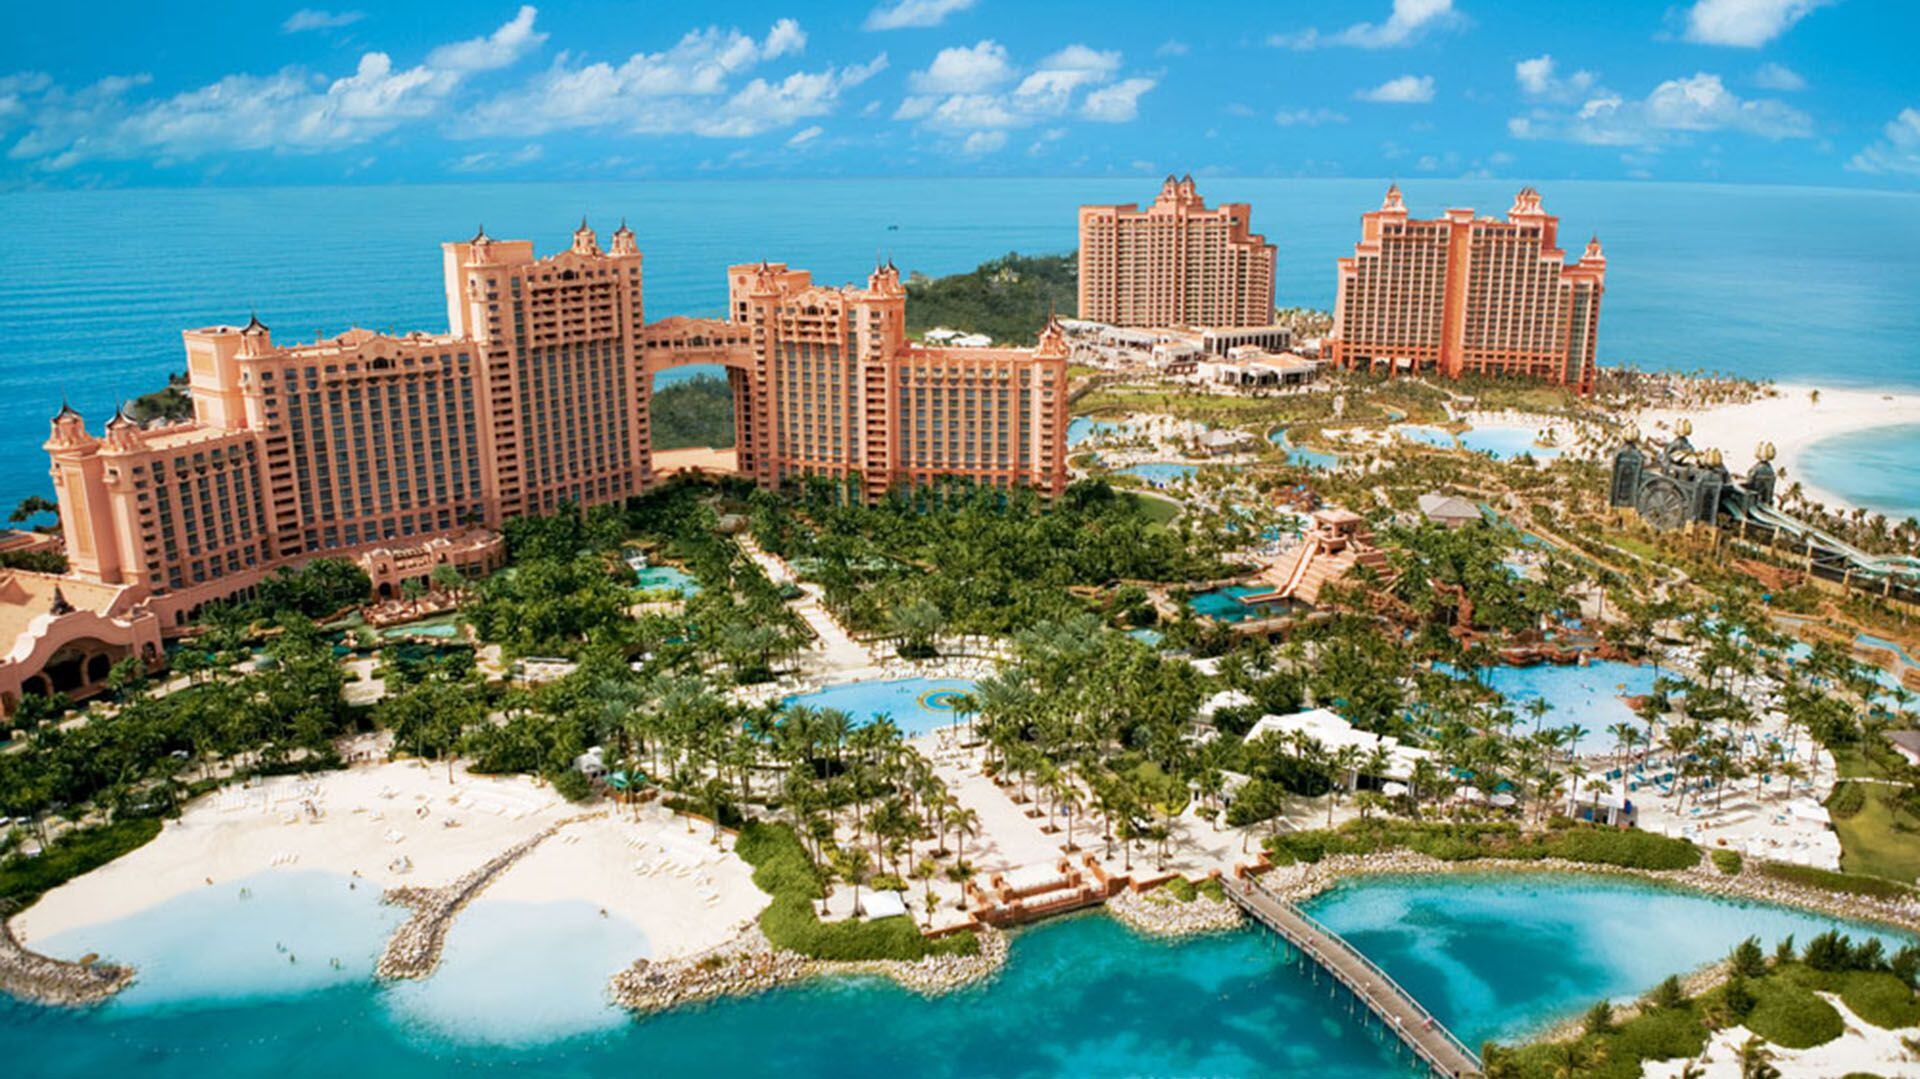 El hotel Atlantis en Bahamas donde tenías inversiones Muñoz 